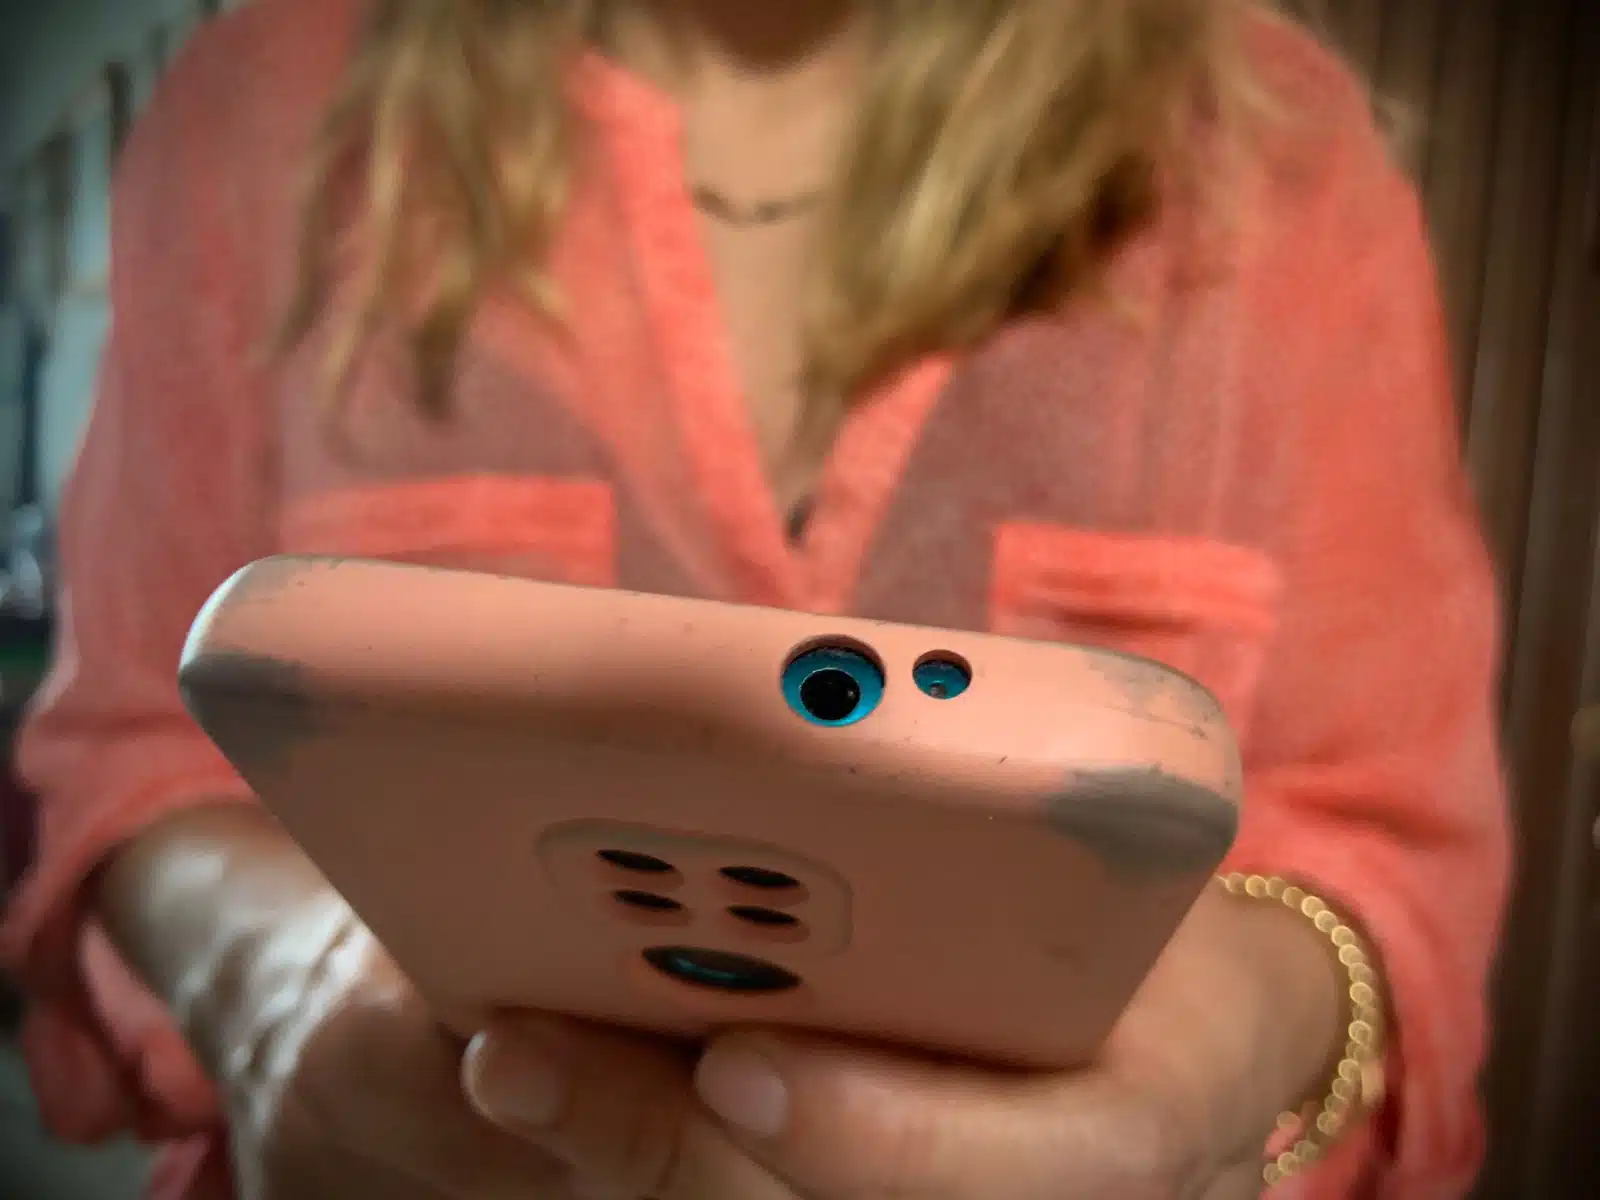 Una persona con blusa rosa y con un celular en la mano del mismo color